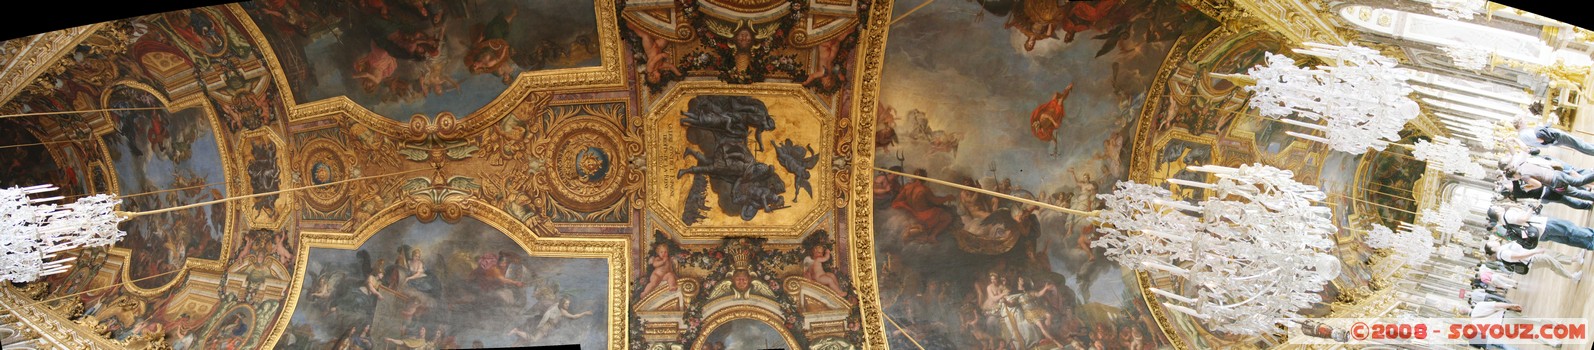 Chateau de Versailles - Galerie des Glaces - panorama
Mots-clés: patrimoine unesco panorama